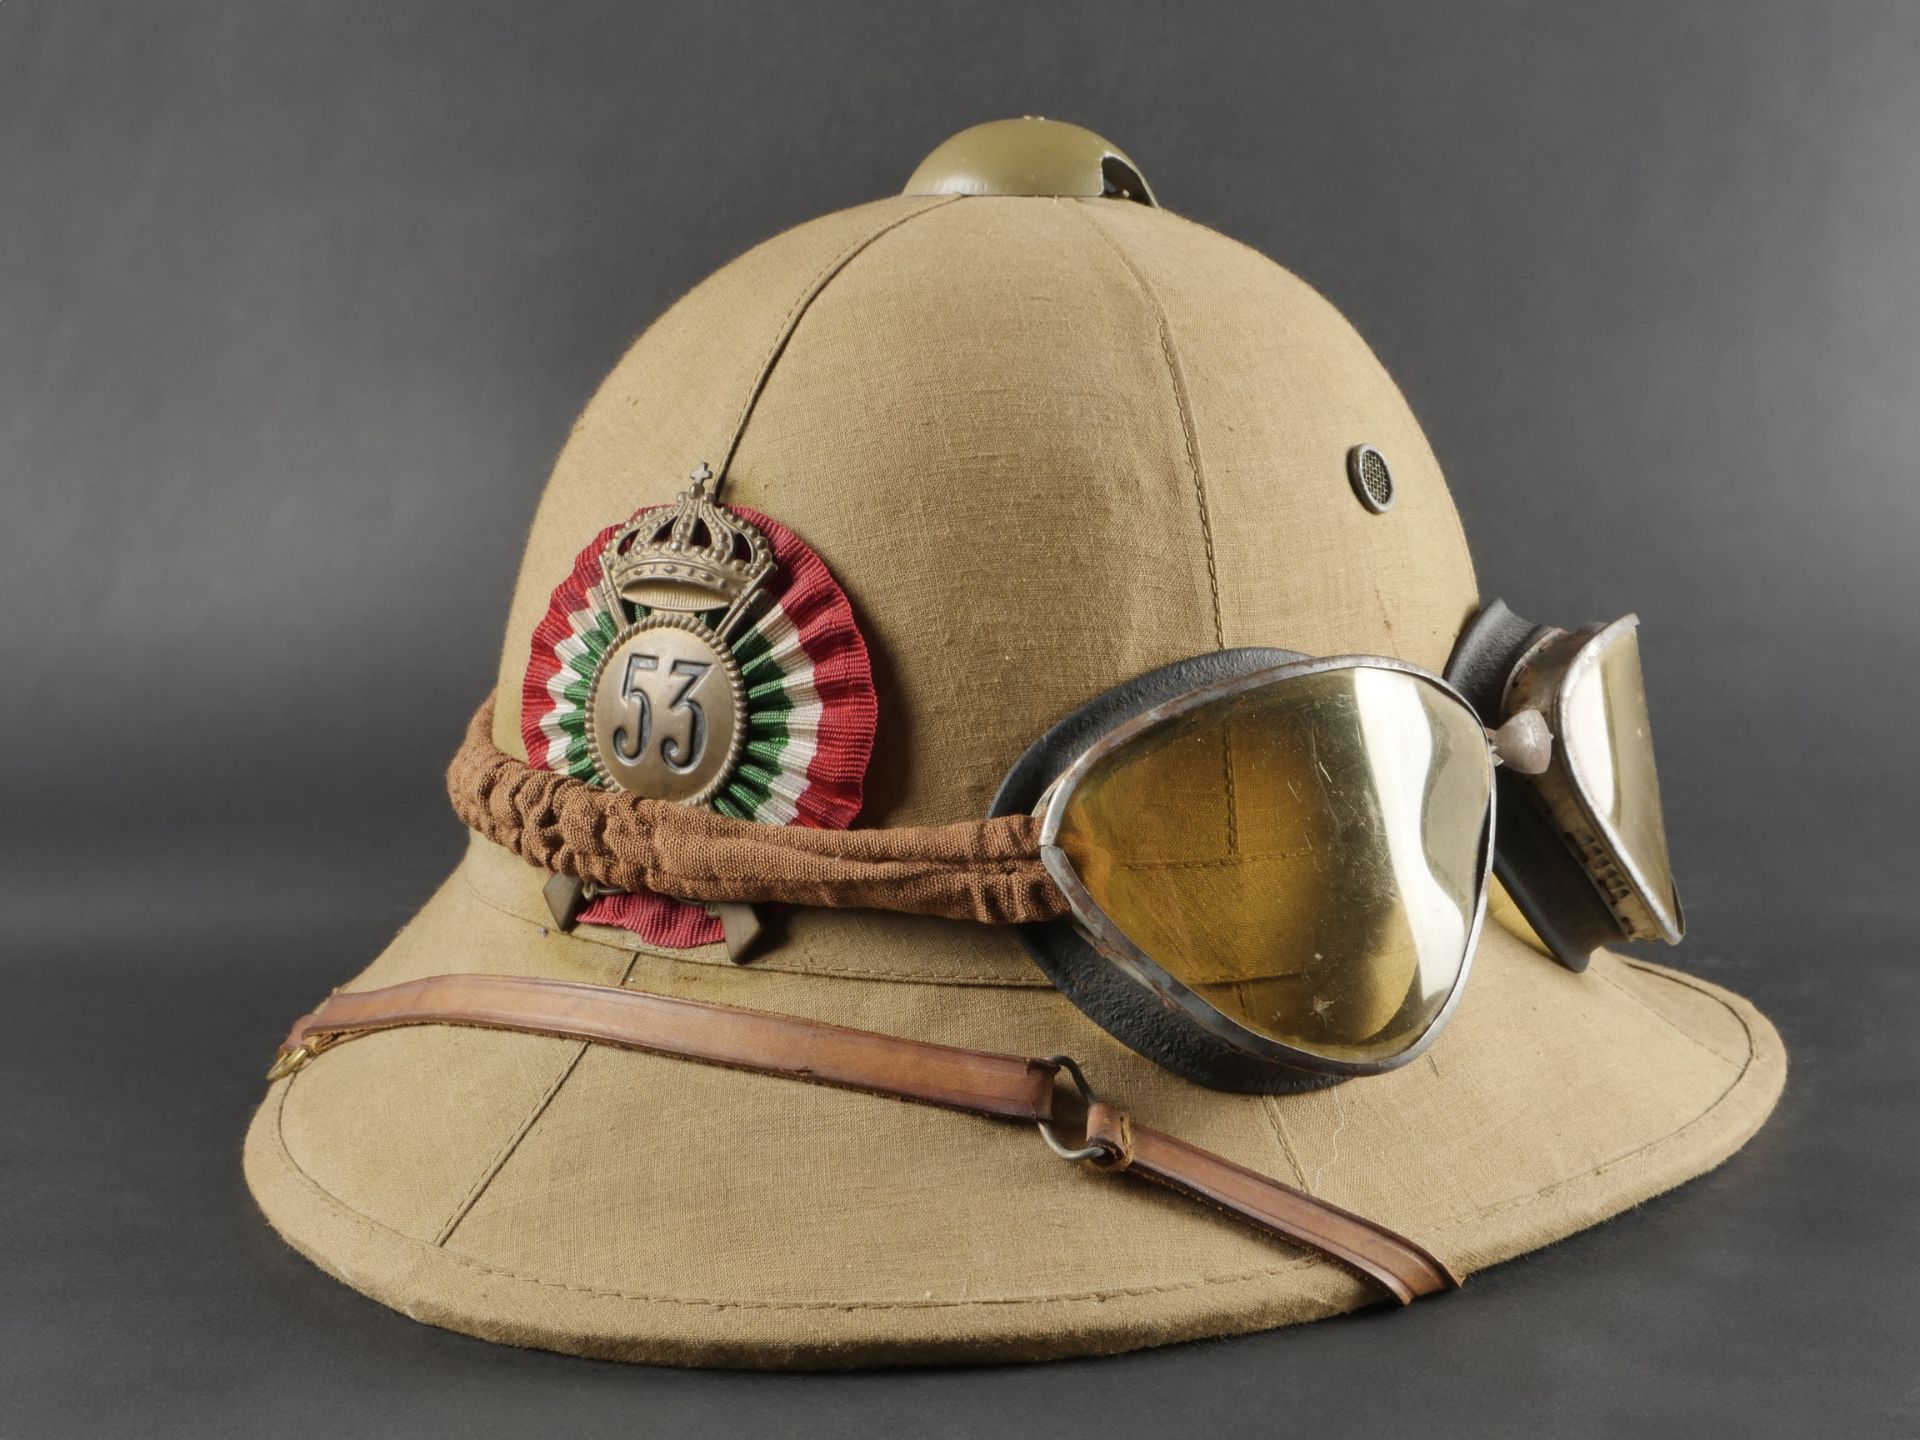 Casque tropicale du 53eme Regiment dInfanterie. Tropical helmet of the 53rd Infantry Regiment.